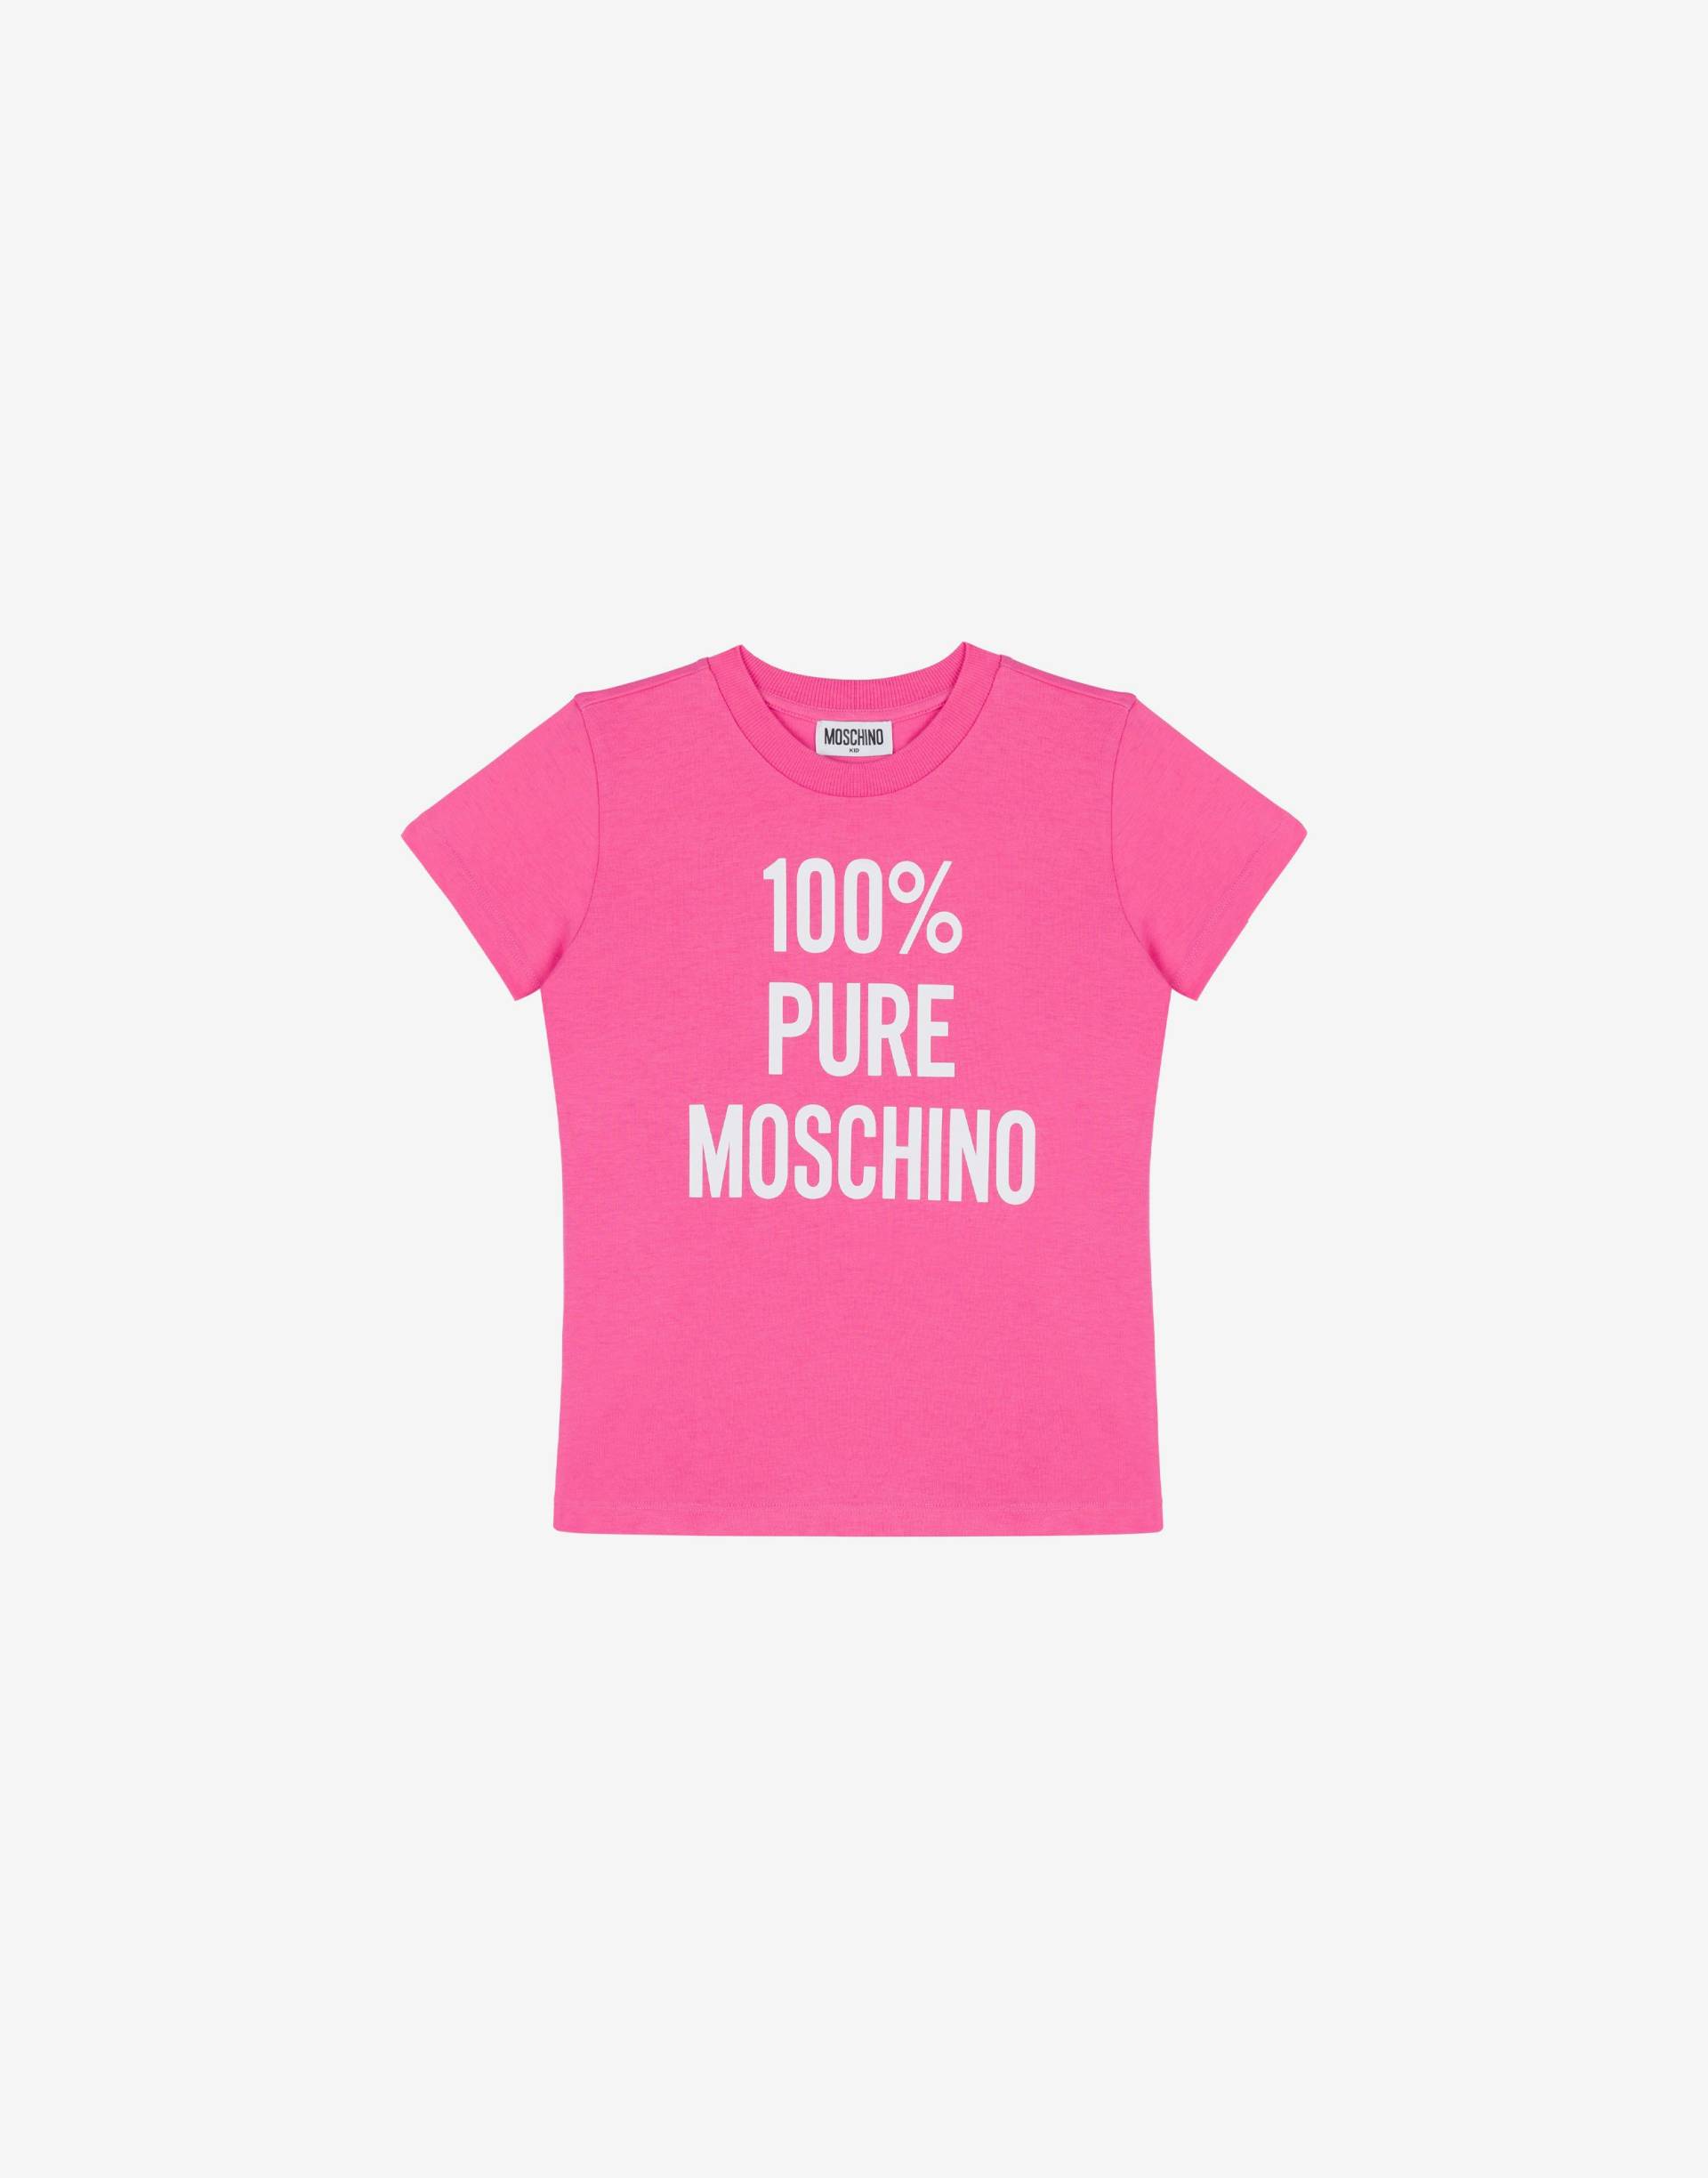 T-shirt Aus Baumwolle 100% Pure Moschino von Moschino